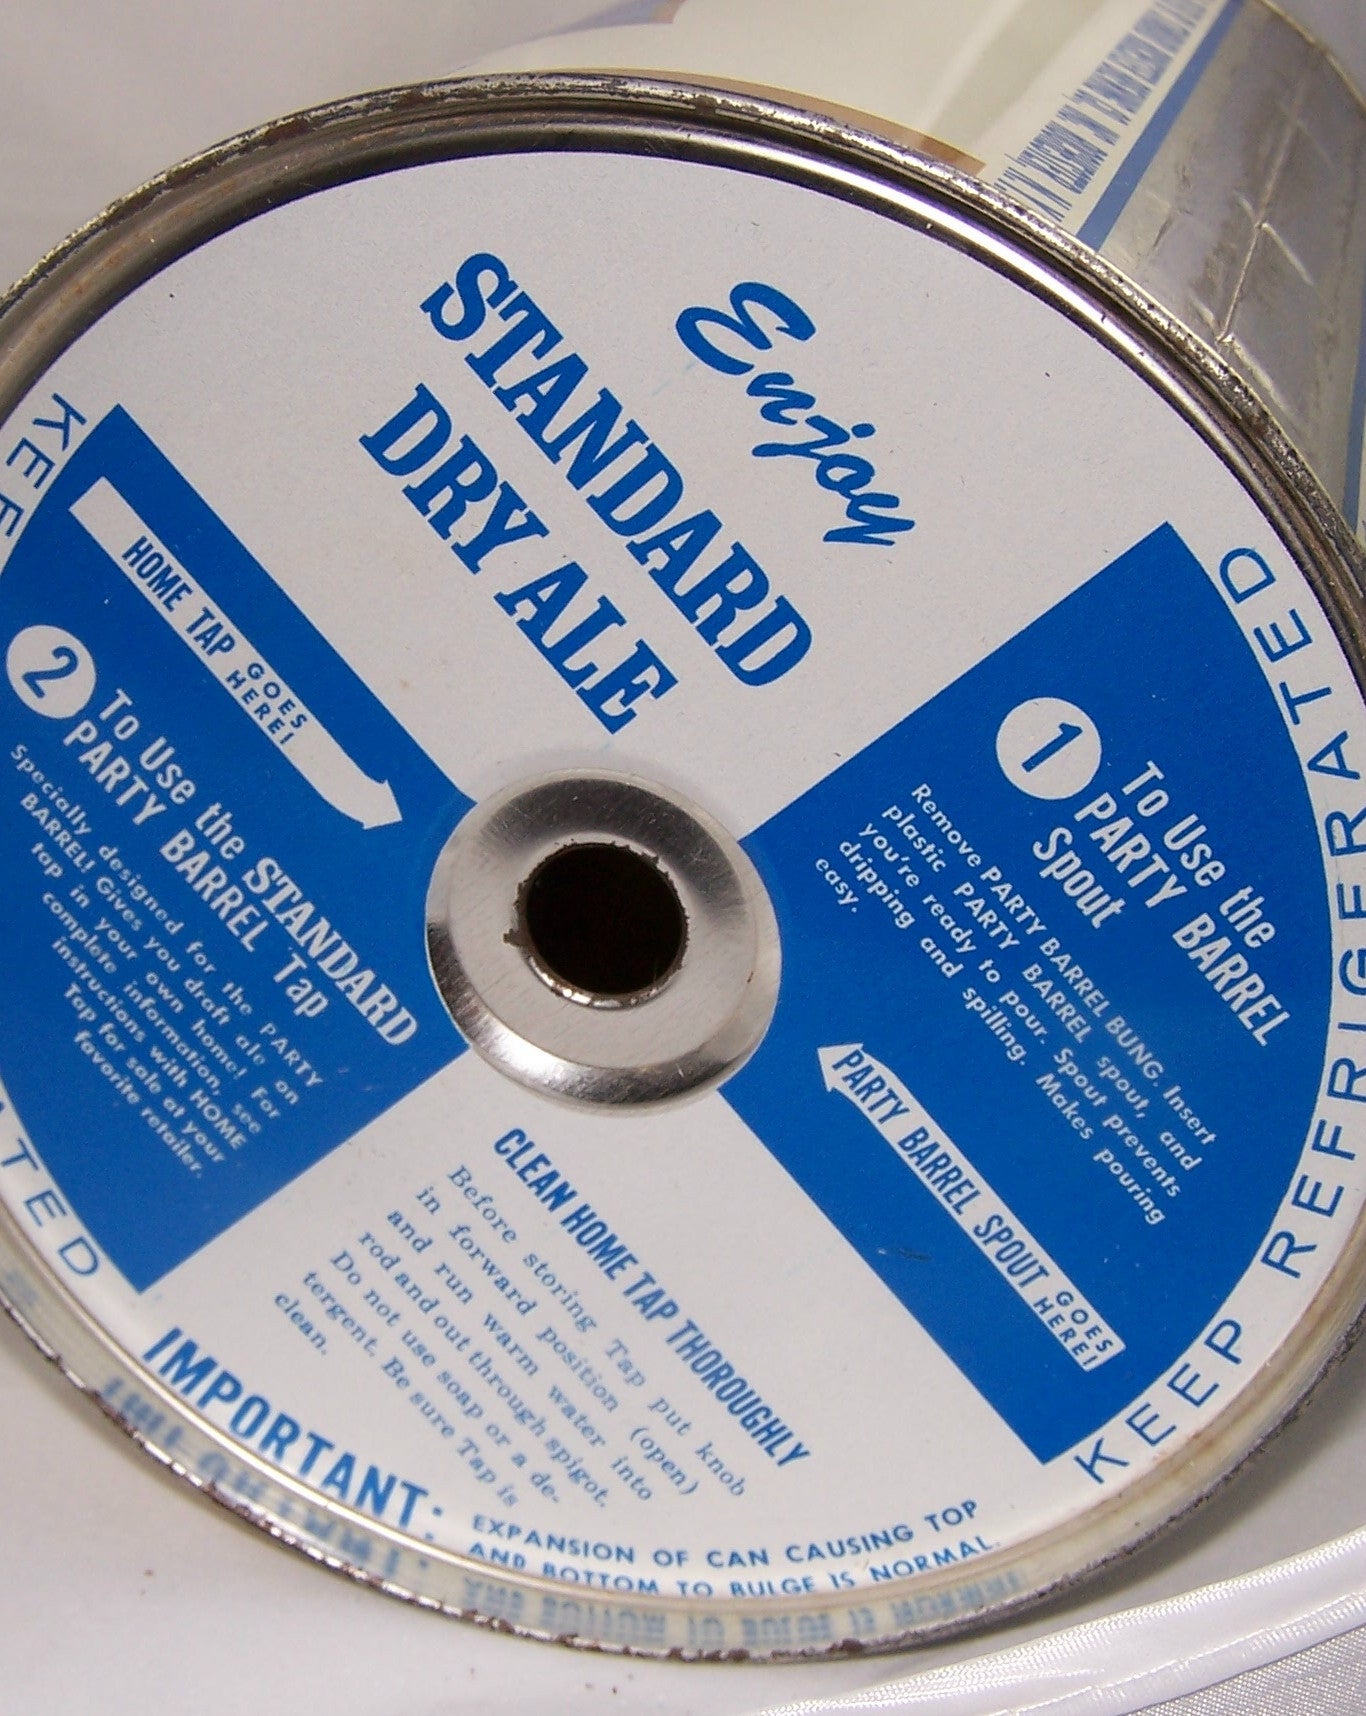 Standard Dry Ale Party Barrel, USBC 246-7, Grade A1+